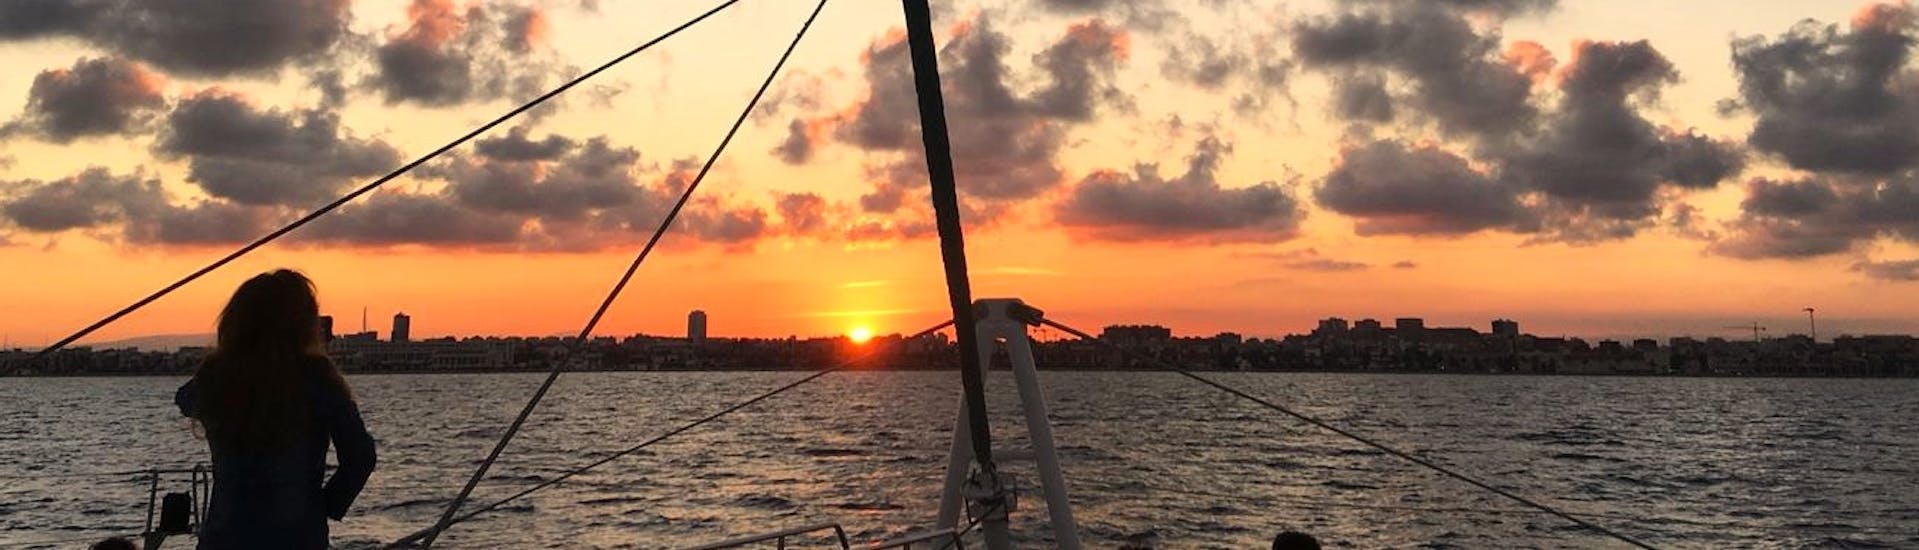 Blick auf den Sonnenuntergang während eines Sunset Catamaran Trips von Denia entlang des Mittelmeers mit Mundo Marino Denia Javea.